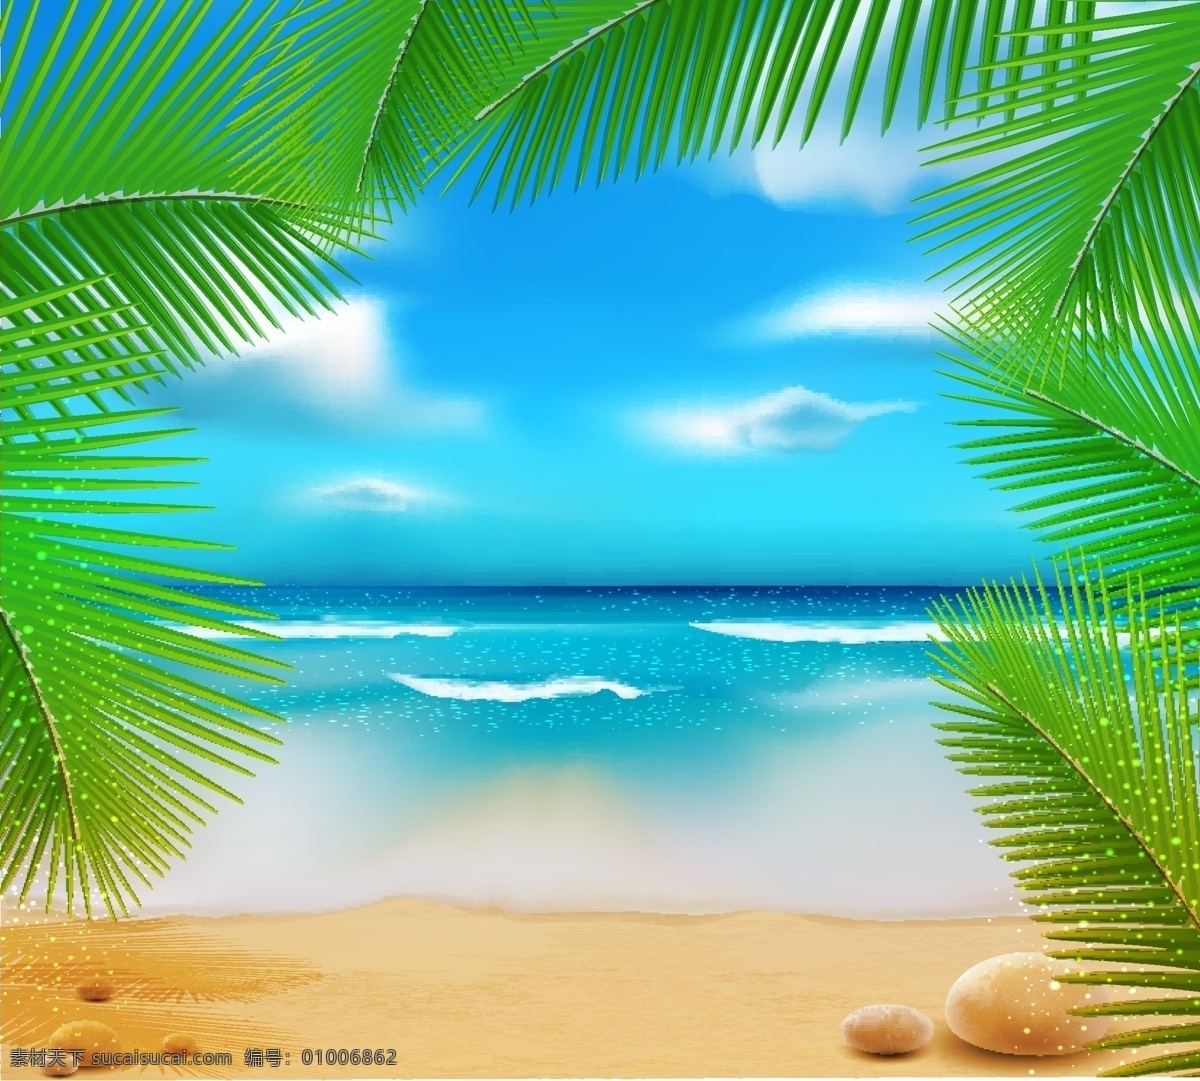 矢量 热带 风光 背景 沙滩 大海 浪花 石头 树叶 天空 白云 自然风光 卡通背景 空间环境 矢量素材 青色 天蓝色